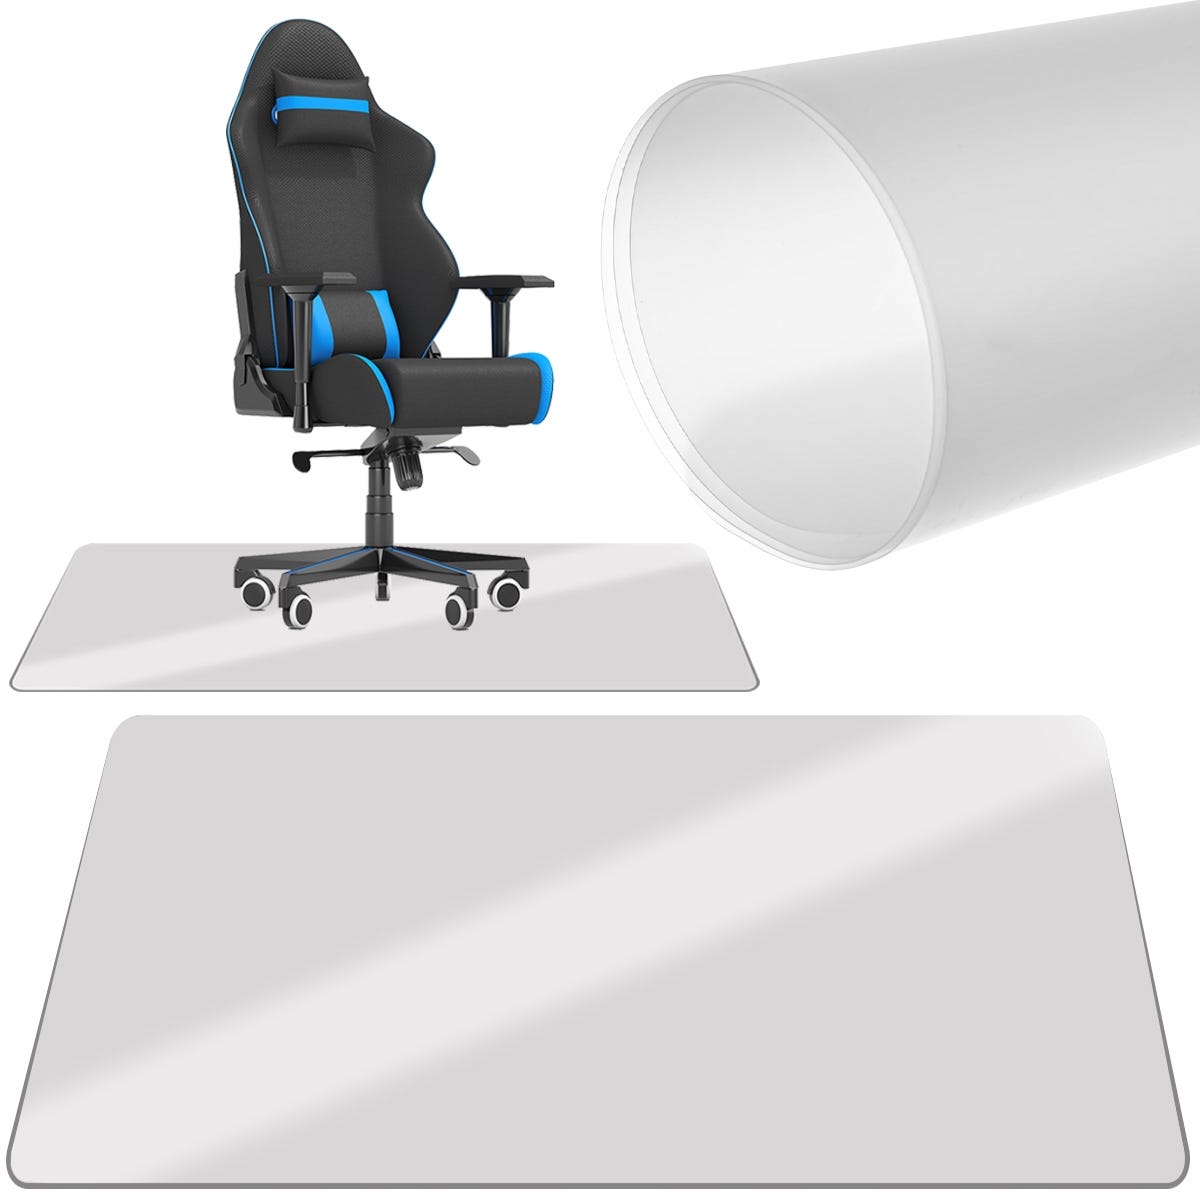 Tapis protège sol pour chaise de bureau, tapis pour protection de